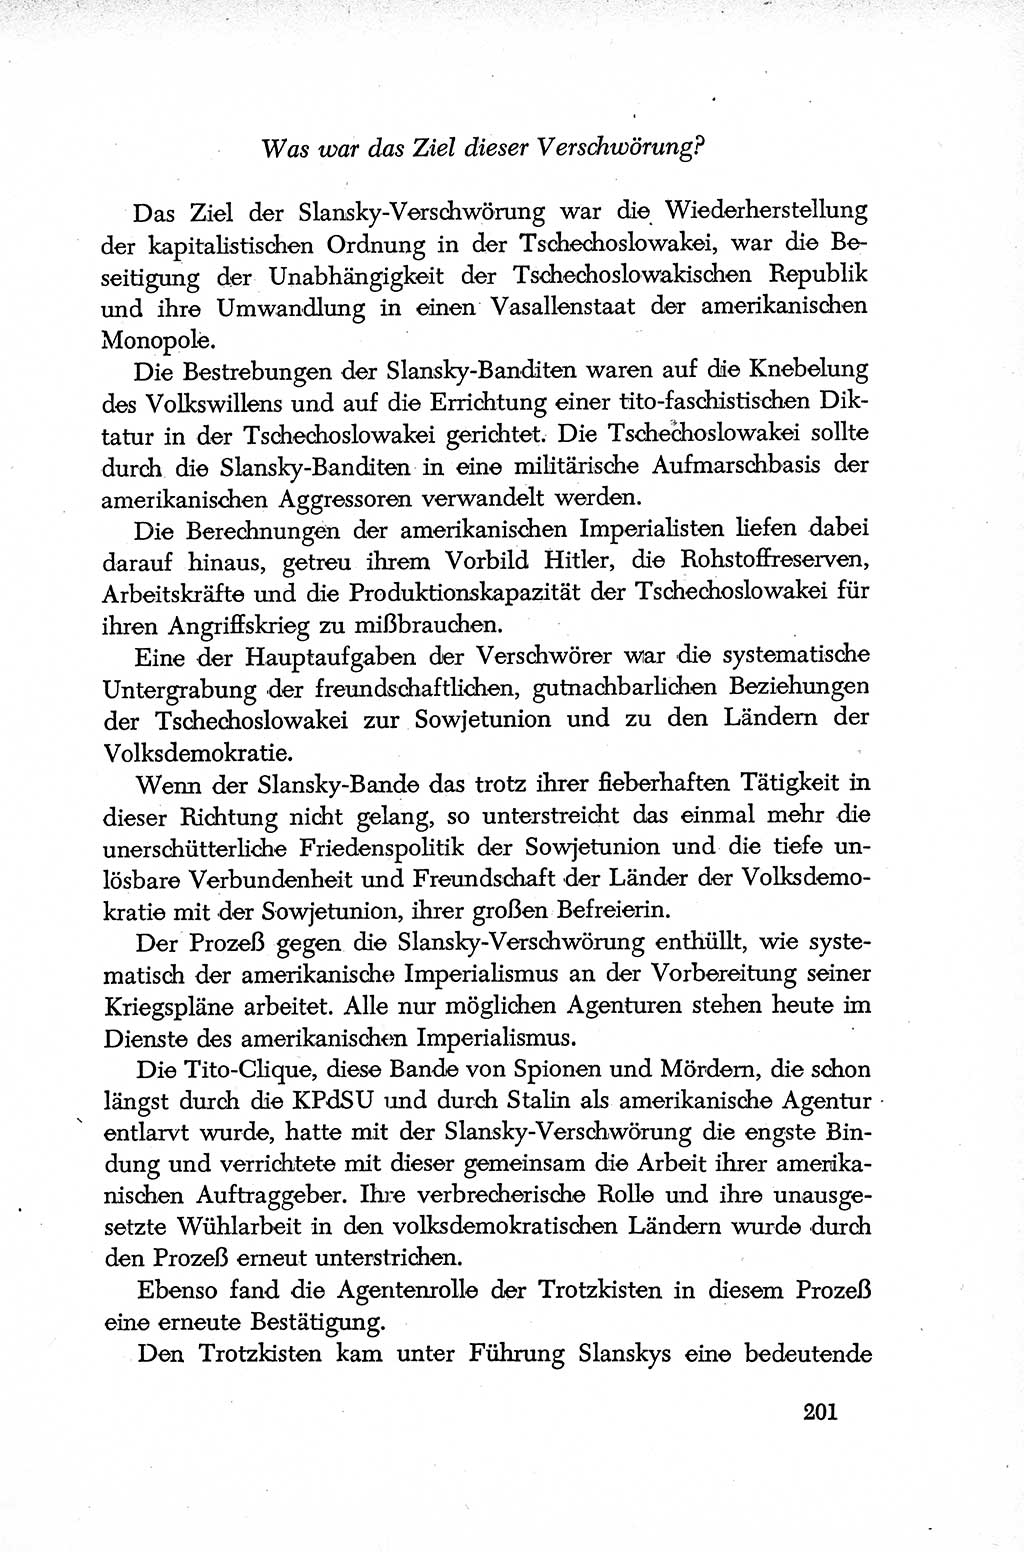 Dokumente der Sozialistischen Einheitspartei Deutschlands (SED) [Deutsche Demokratische Republik (DDR)] 1952-1953, Seite 201 (Dok. SED DDR 1952-1953, S. 201)